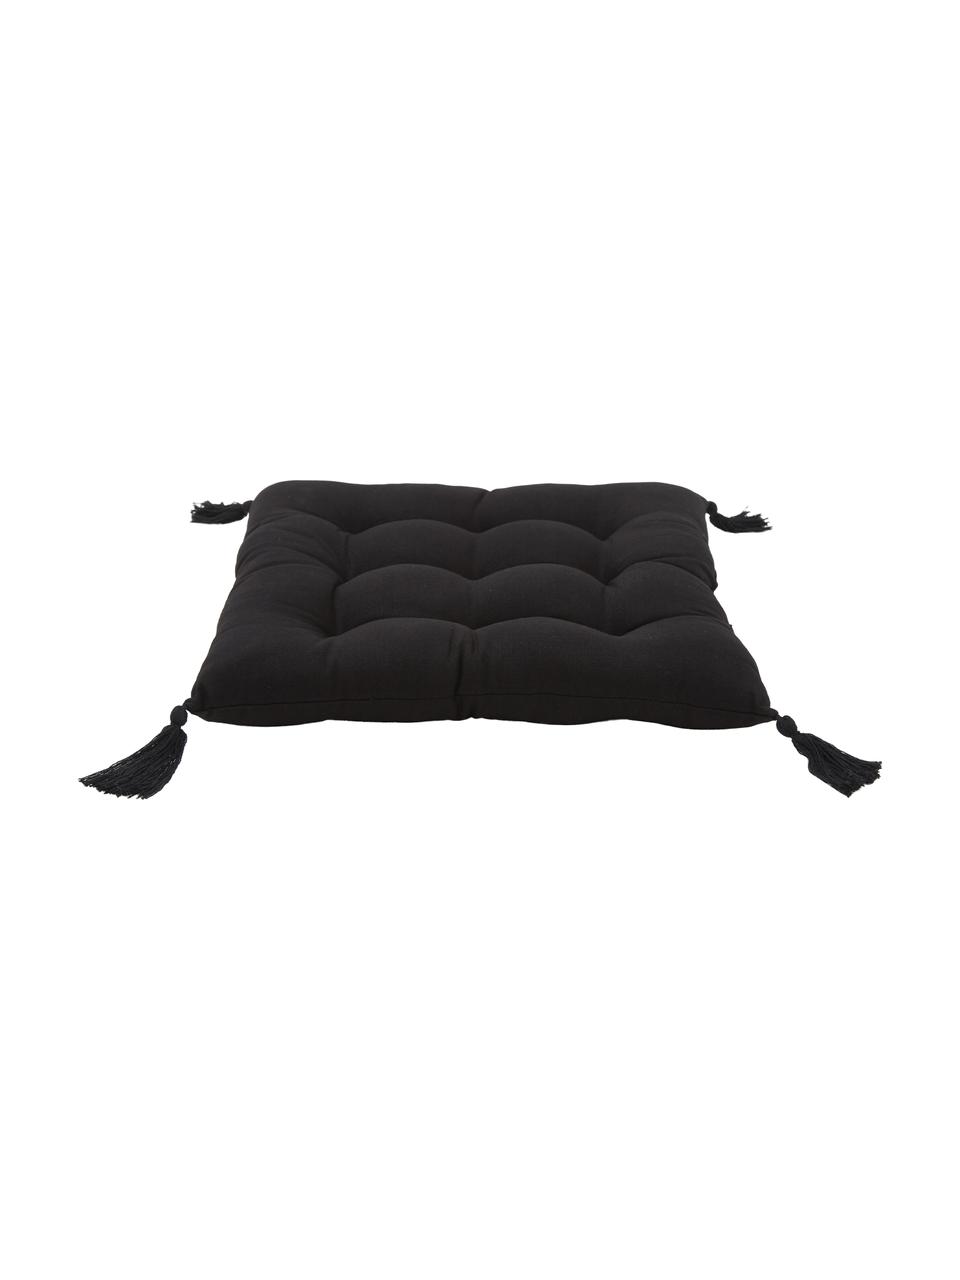 Cojín de asiento de algodón con borlas Ava, Funda: 100% algodón, Negro, An 40 x L 40 cm